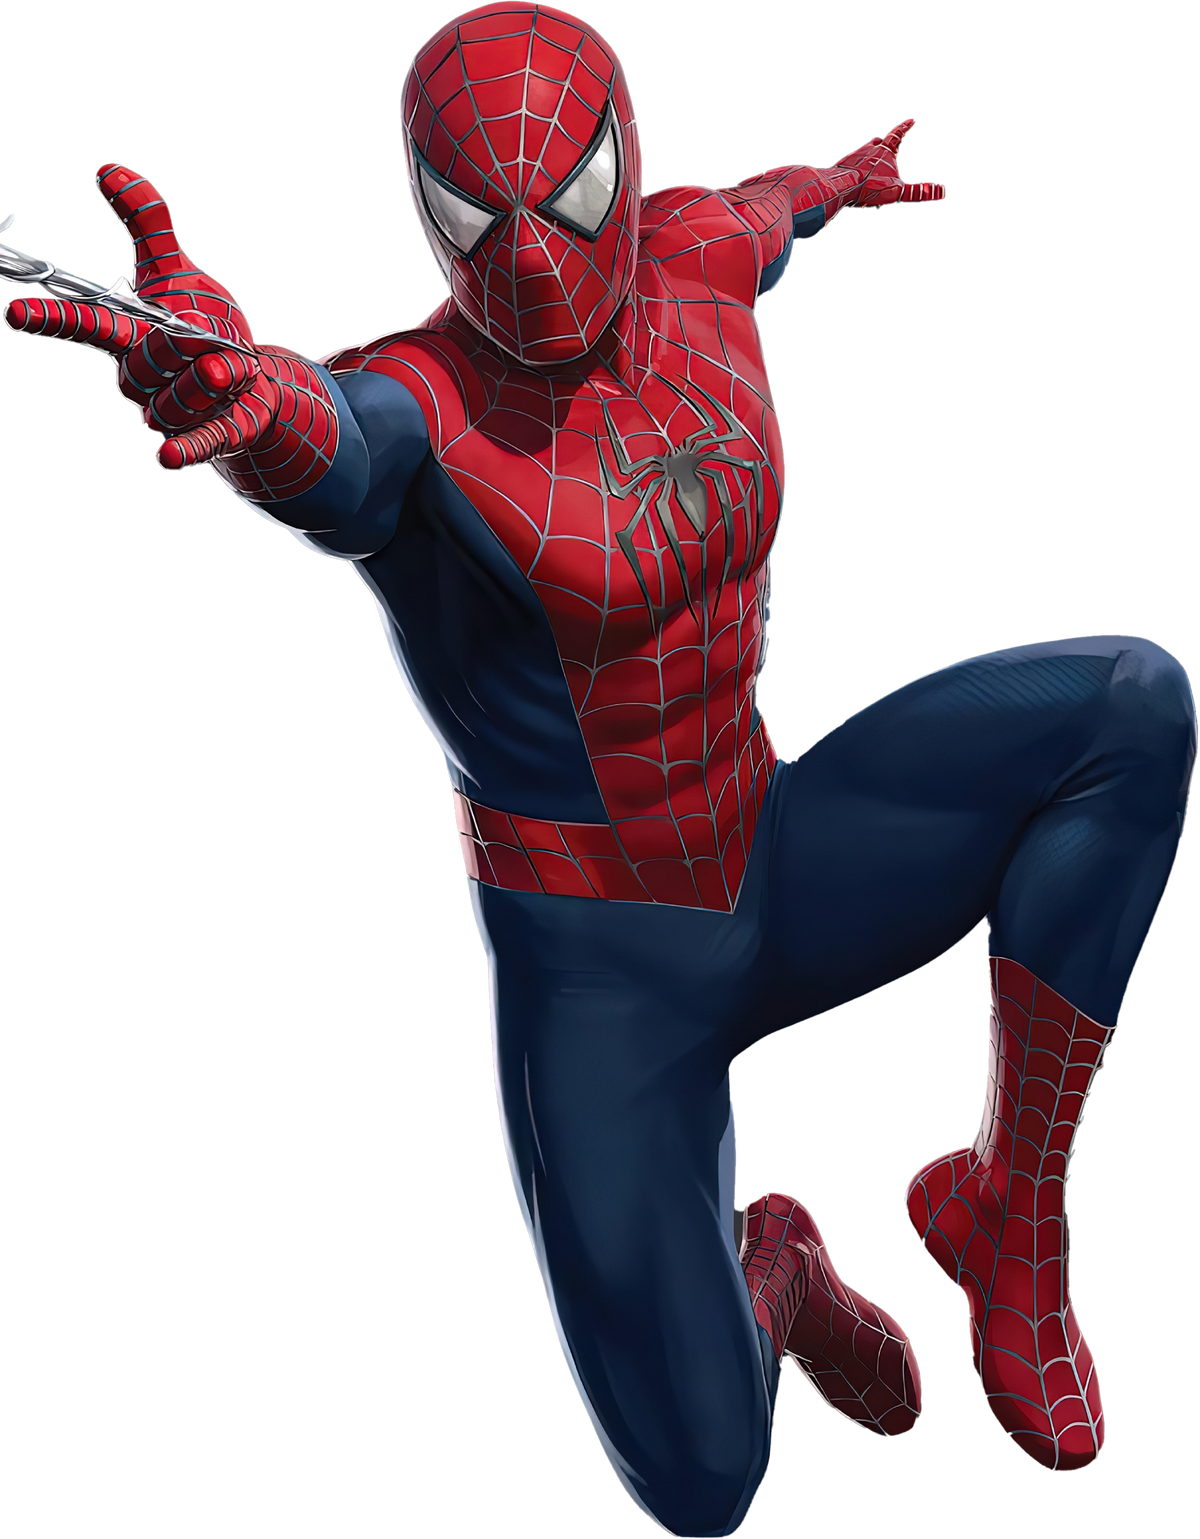 Spider Man Spider Man Films Pure Good Wiki Fandom